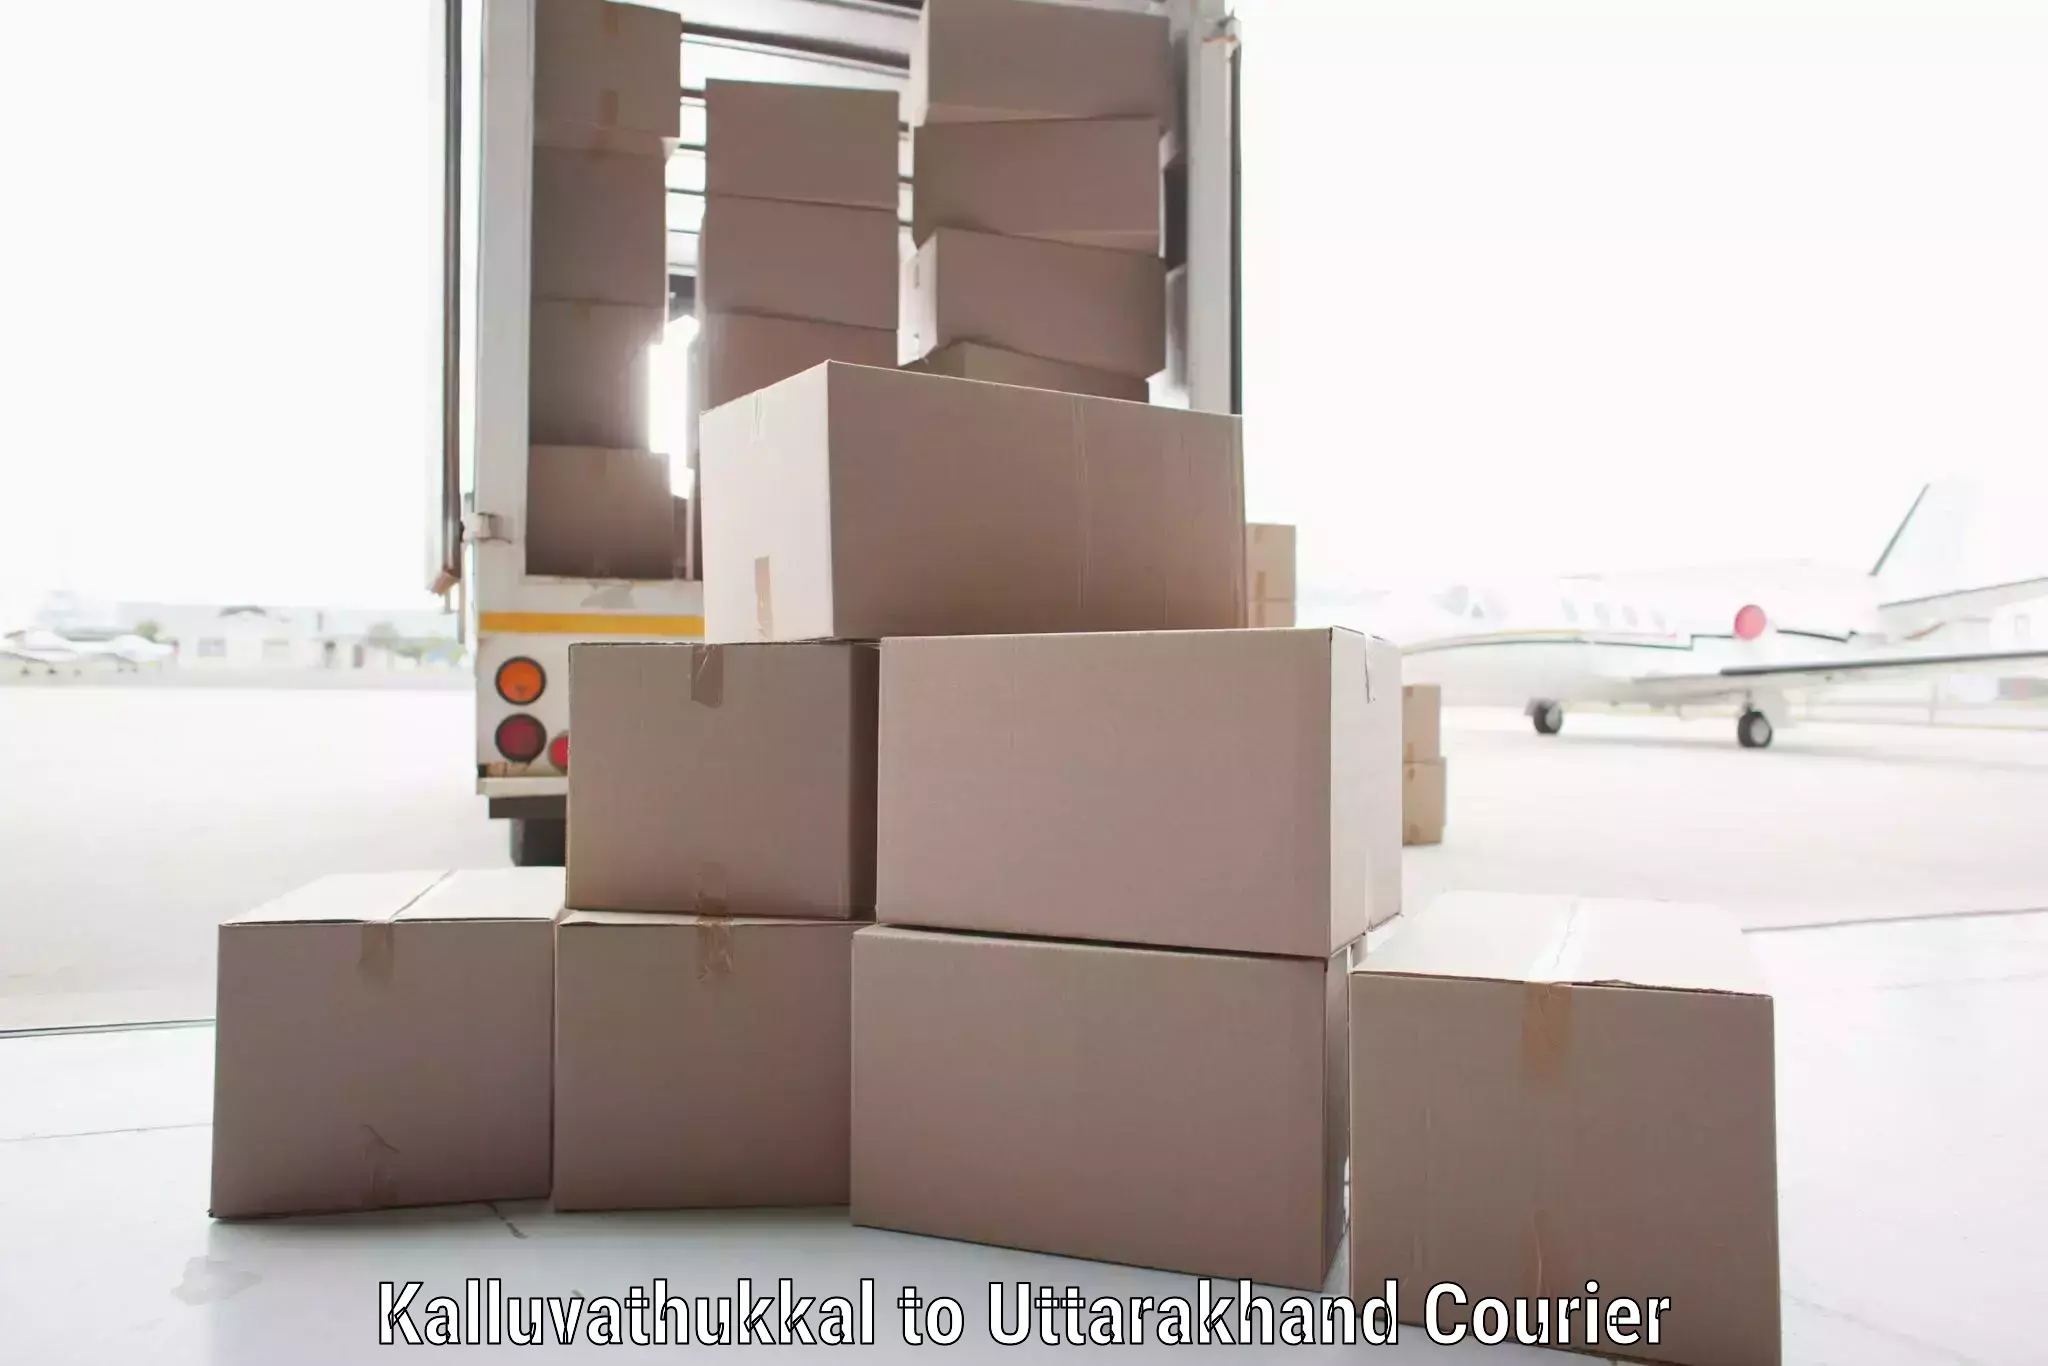 Customized shipping options Kalluvathukkal to Lansdowne